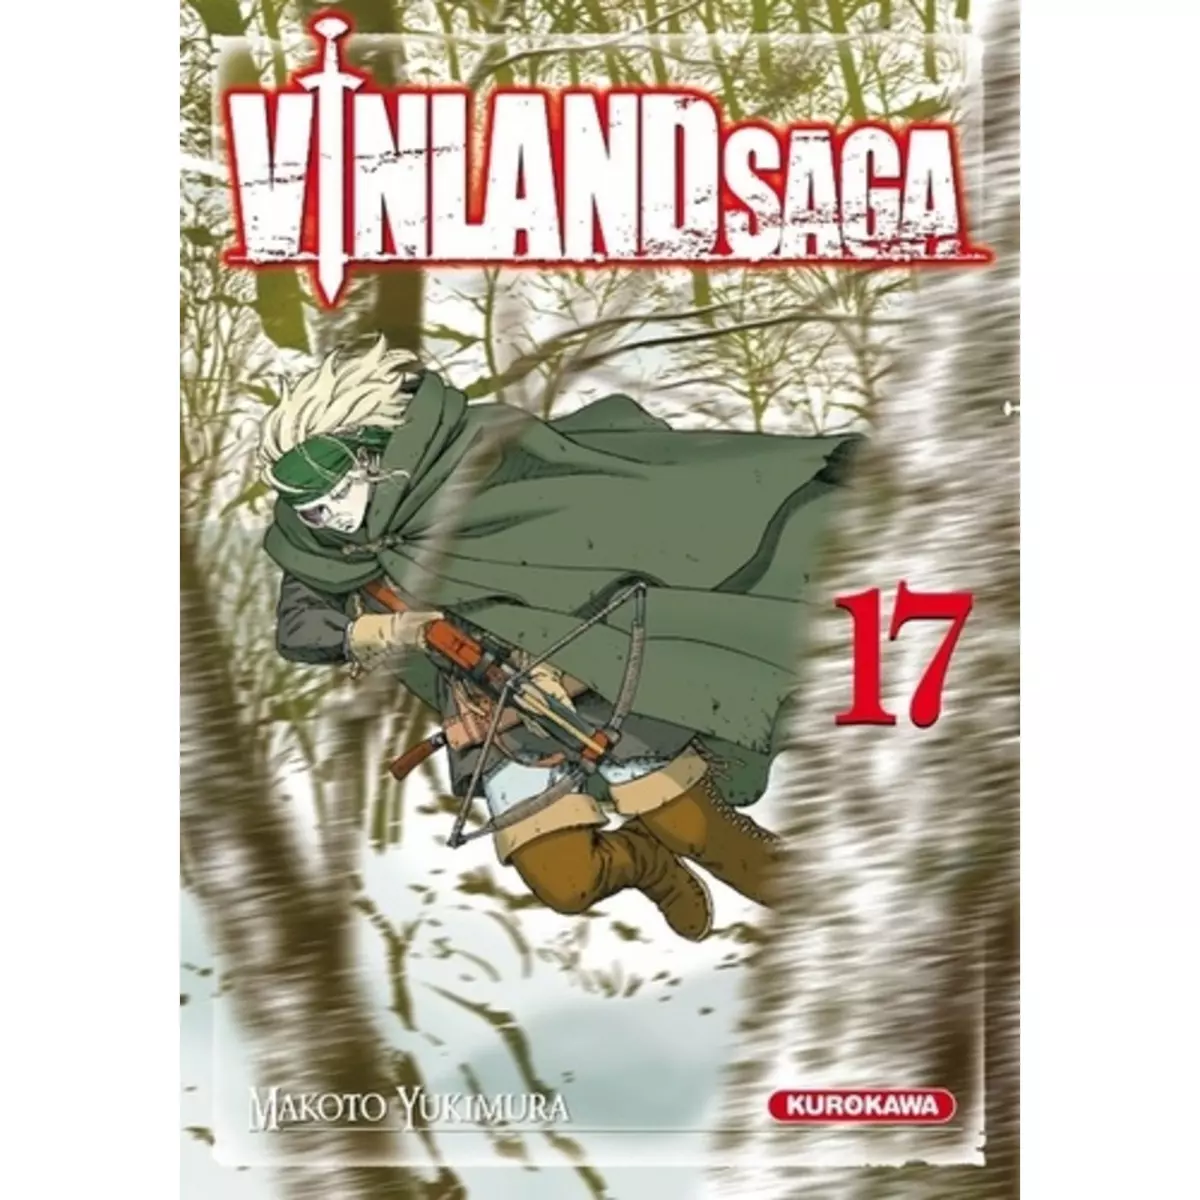  VINLAND SAGA TOME 17, Yukimura Makoto